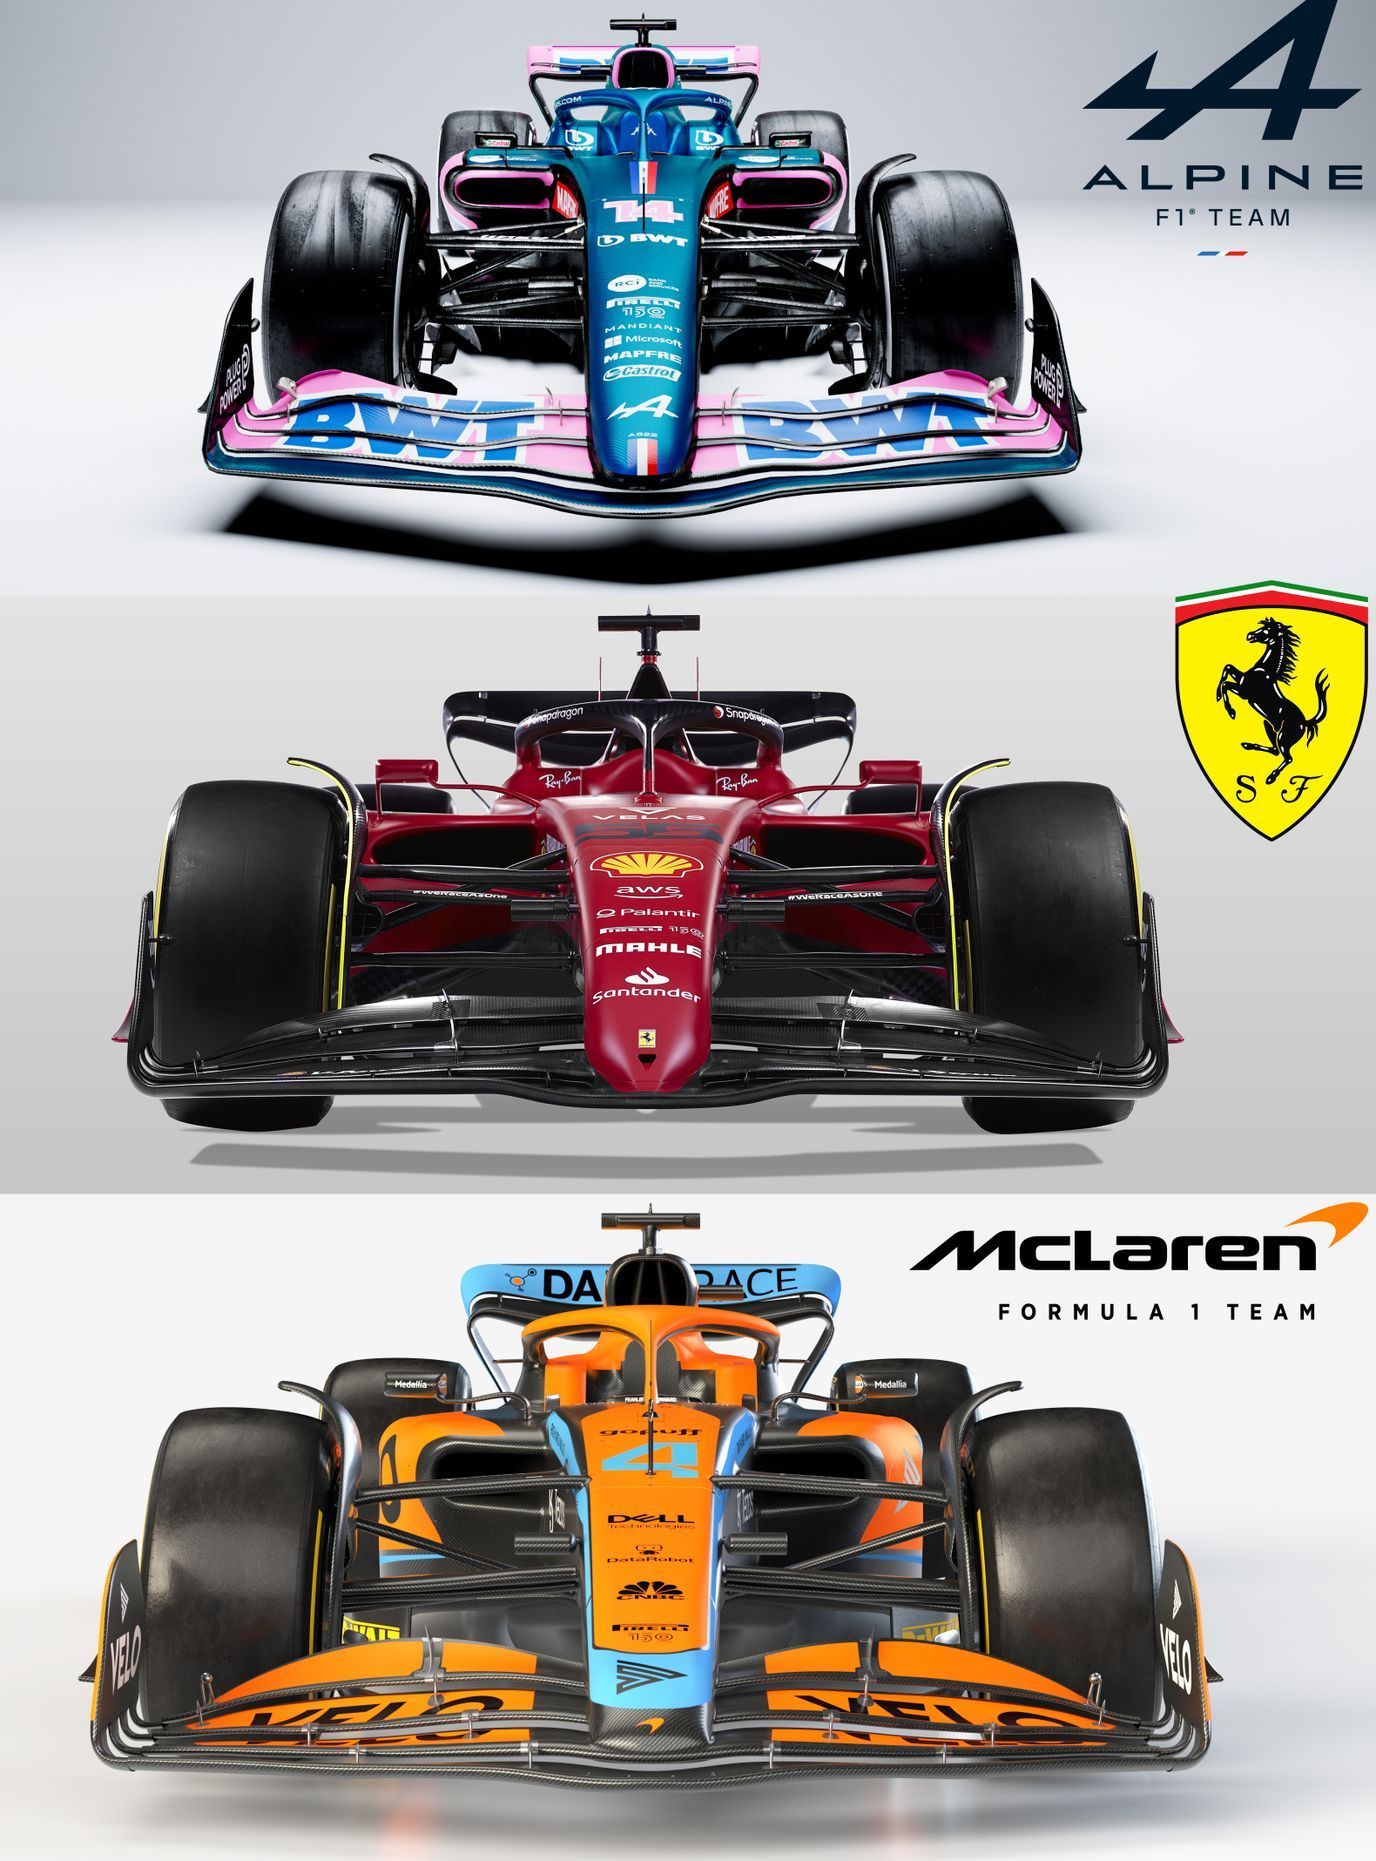 Porovnání monopostů F1 Alpine, Ferrari a McLaren pro letošní sezonu